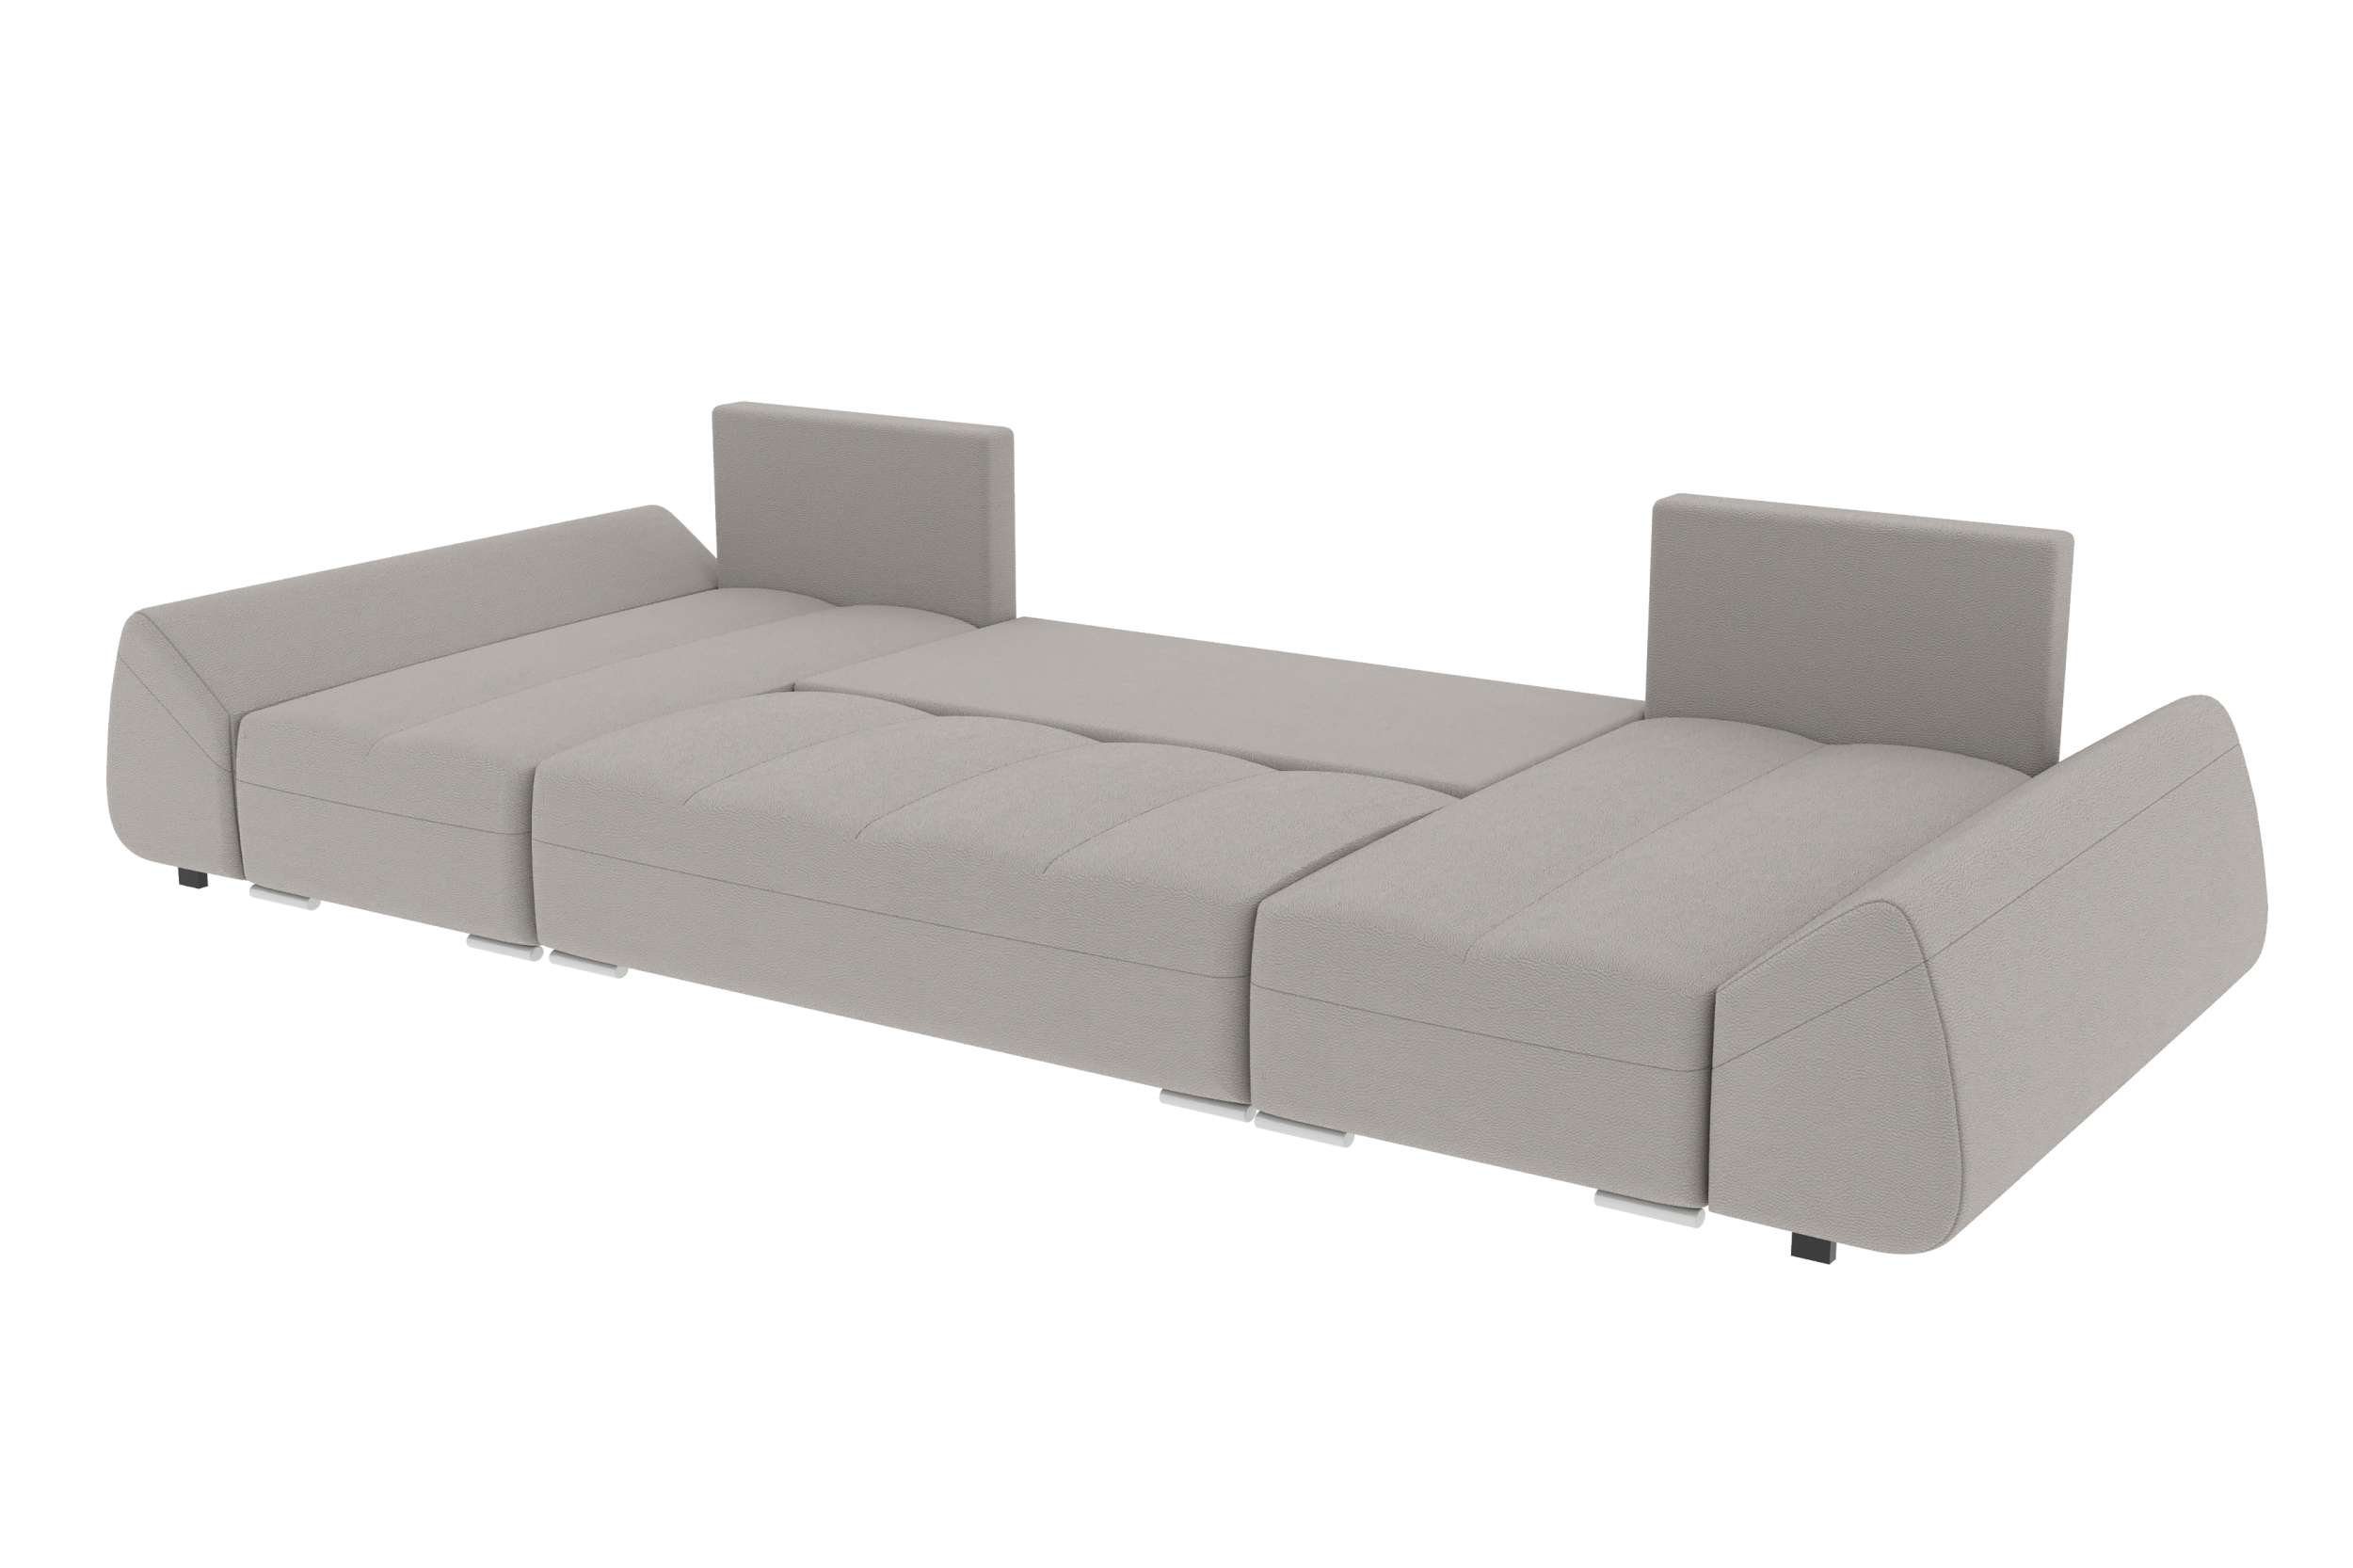 mit Design Modern Bettfunktion, Sofa, Eckcouch, mit Stylefy U-Form, Bettkasten, Madeira, Sitzkomfort, Wohnlandschaft